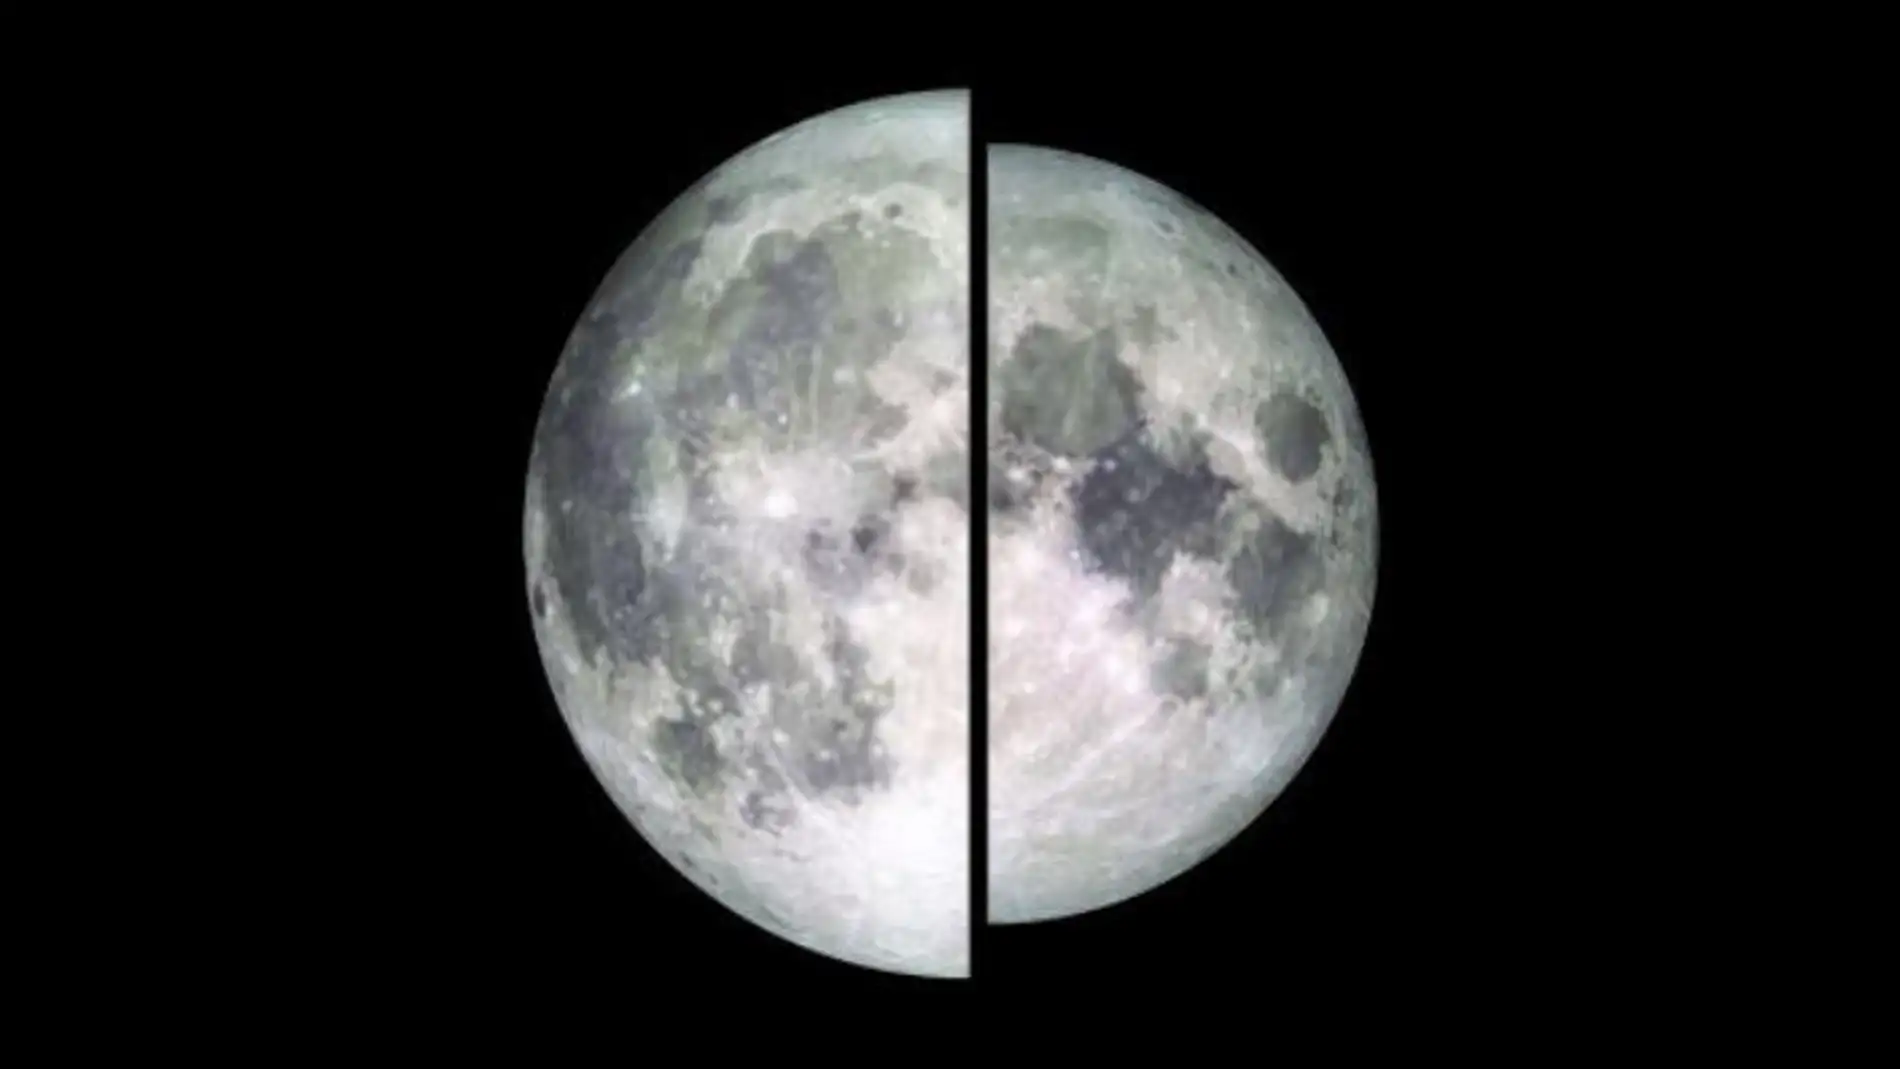 Imagen de dos lunas tomada por el LRO (Lunar Reconnaissance Orbiter). Una de ellas está en su punto más cercano a la Tierra (perigee) y otra en el más alejado (apogeo)